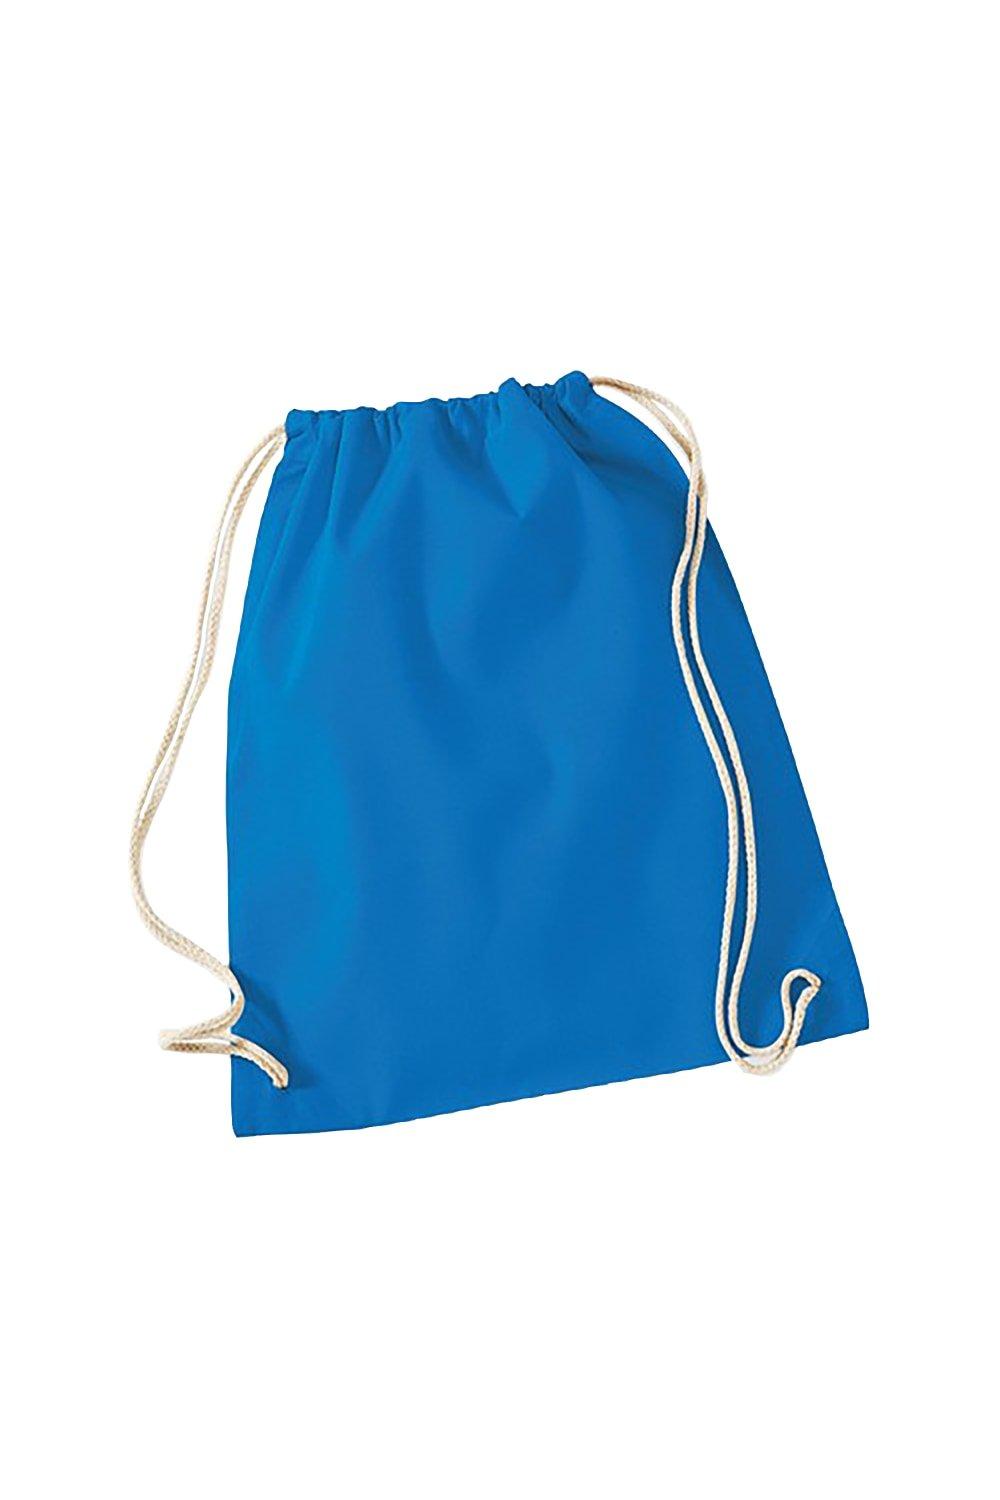 Хлопковая сумка Gymsac - 12 литров Westford Mill, синий